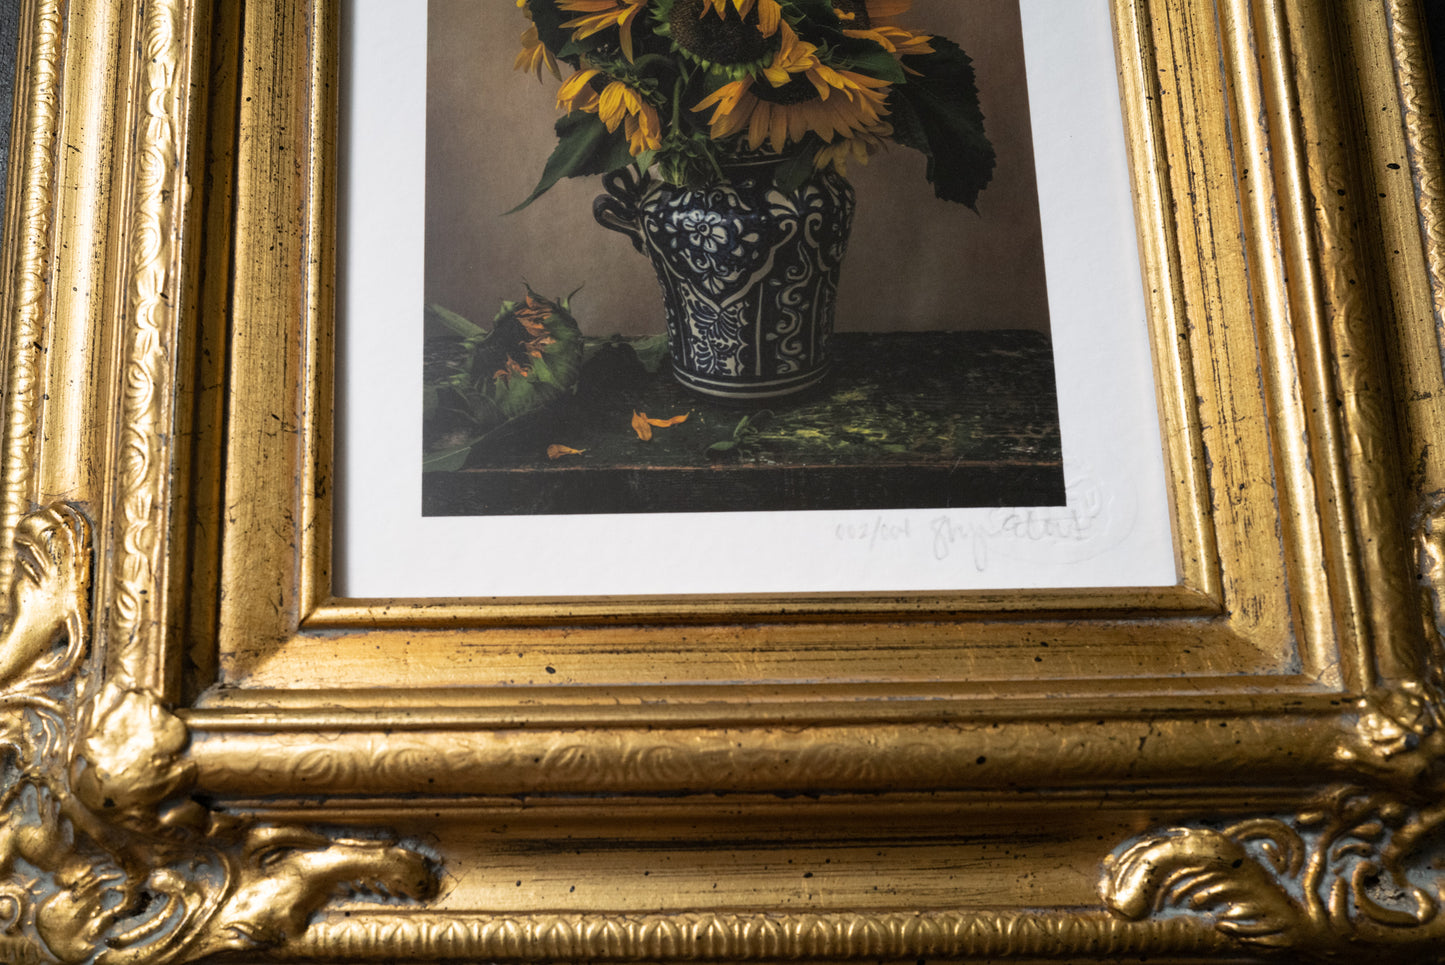 Sunflowers, Framed